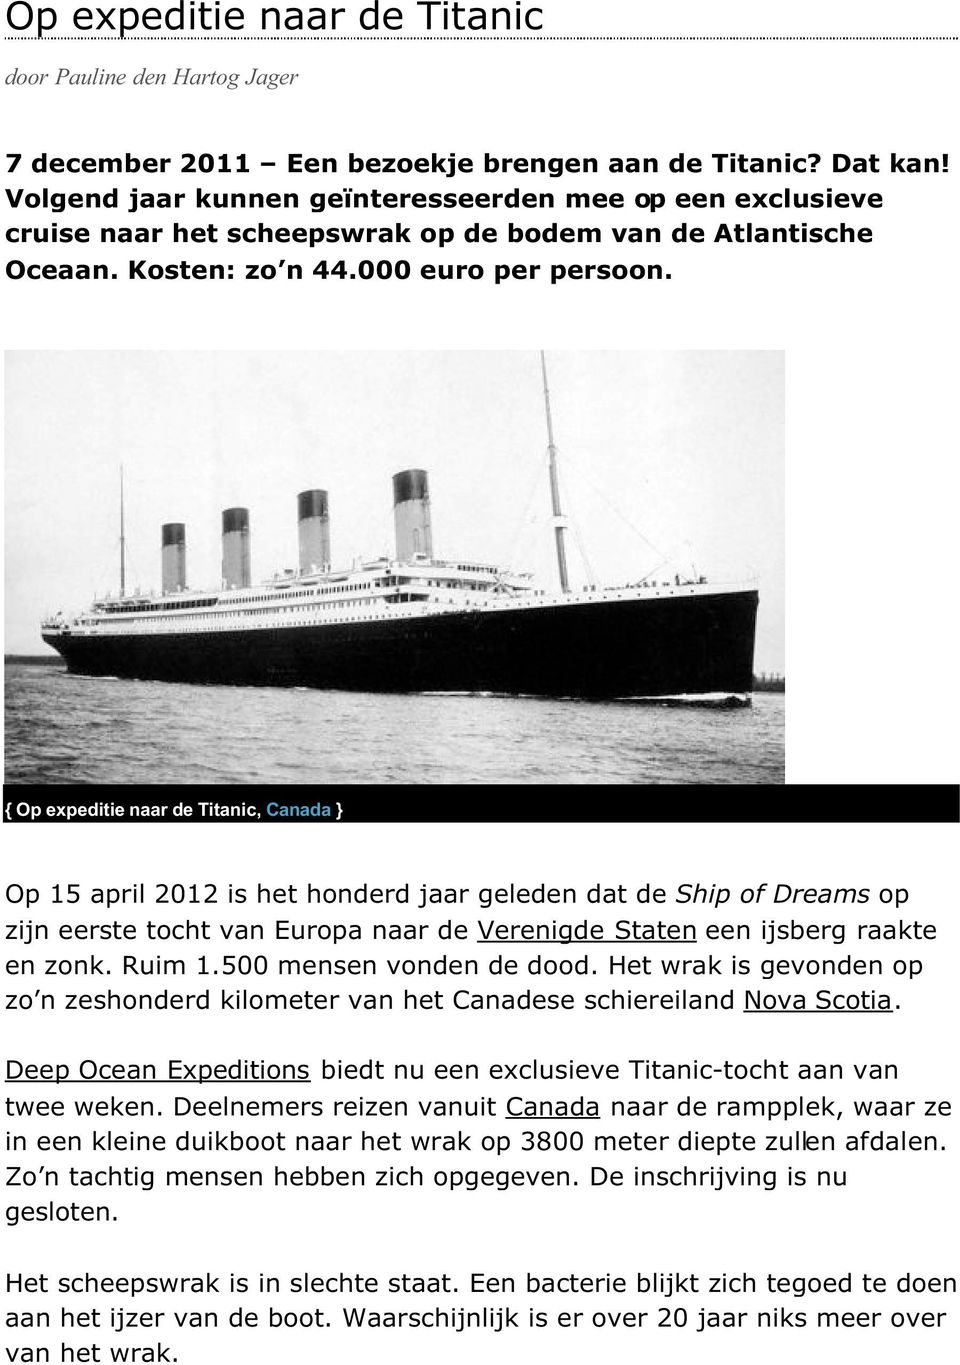 { Op expeditie naar de Titanic, Canada } Op 15 april 2012 is het honderd jaar geleden dat de Ship of Dreams op zijn eerste tocht van Europa naar de Verenigde Staten een ijsberg raakte en zonk. Ruim 1.